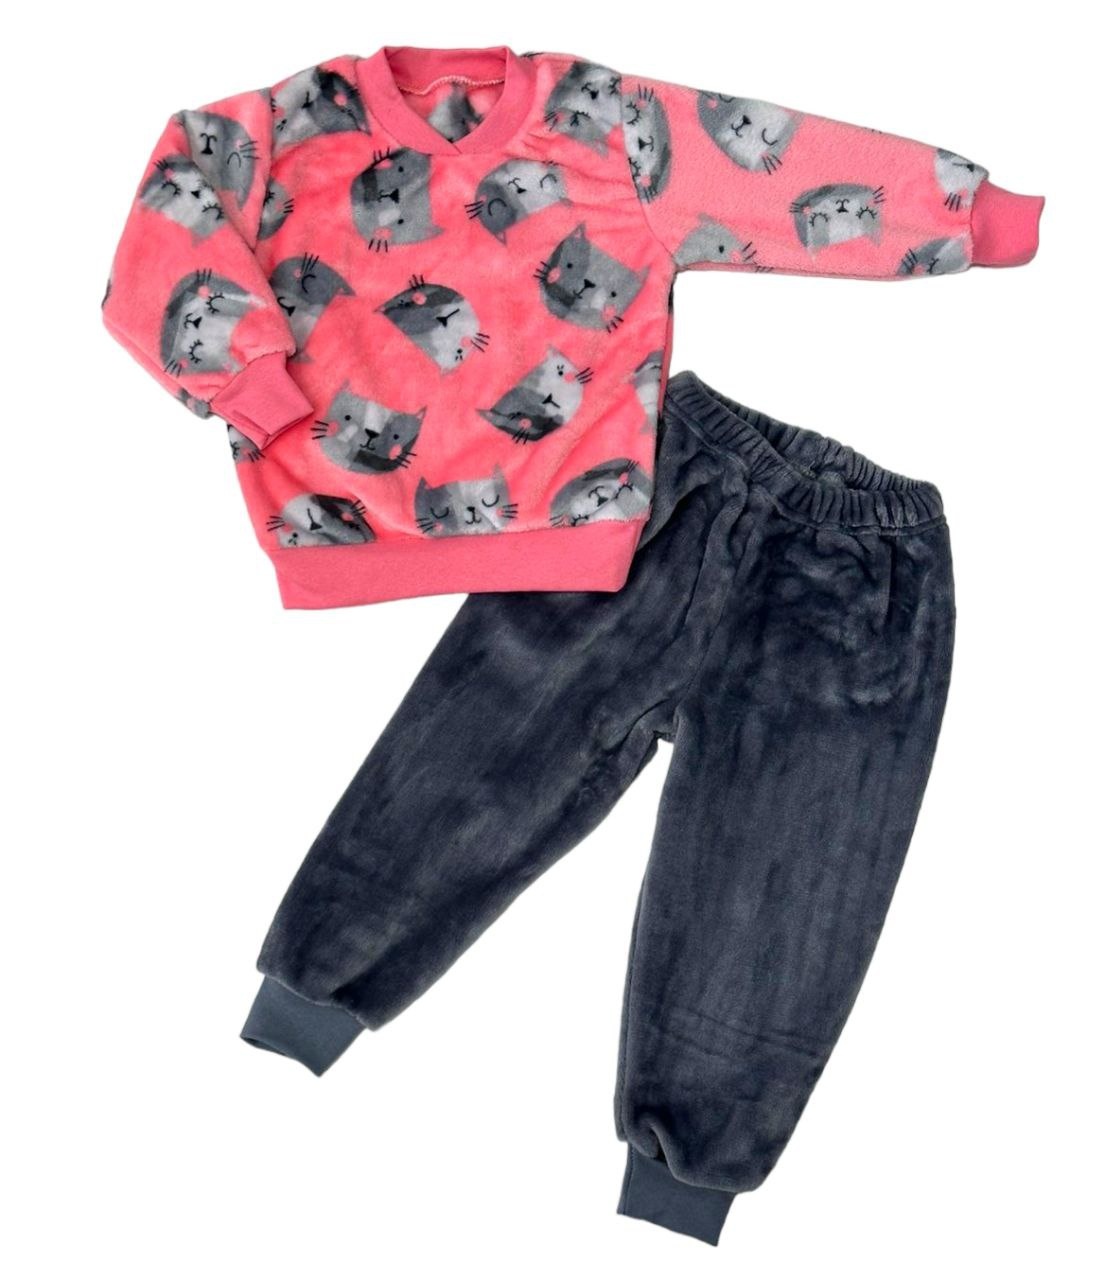 Пижама комбинирована махра на манжетах розового цвета, Розовый, 11-12 лет, 146см